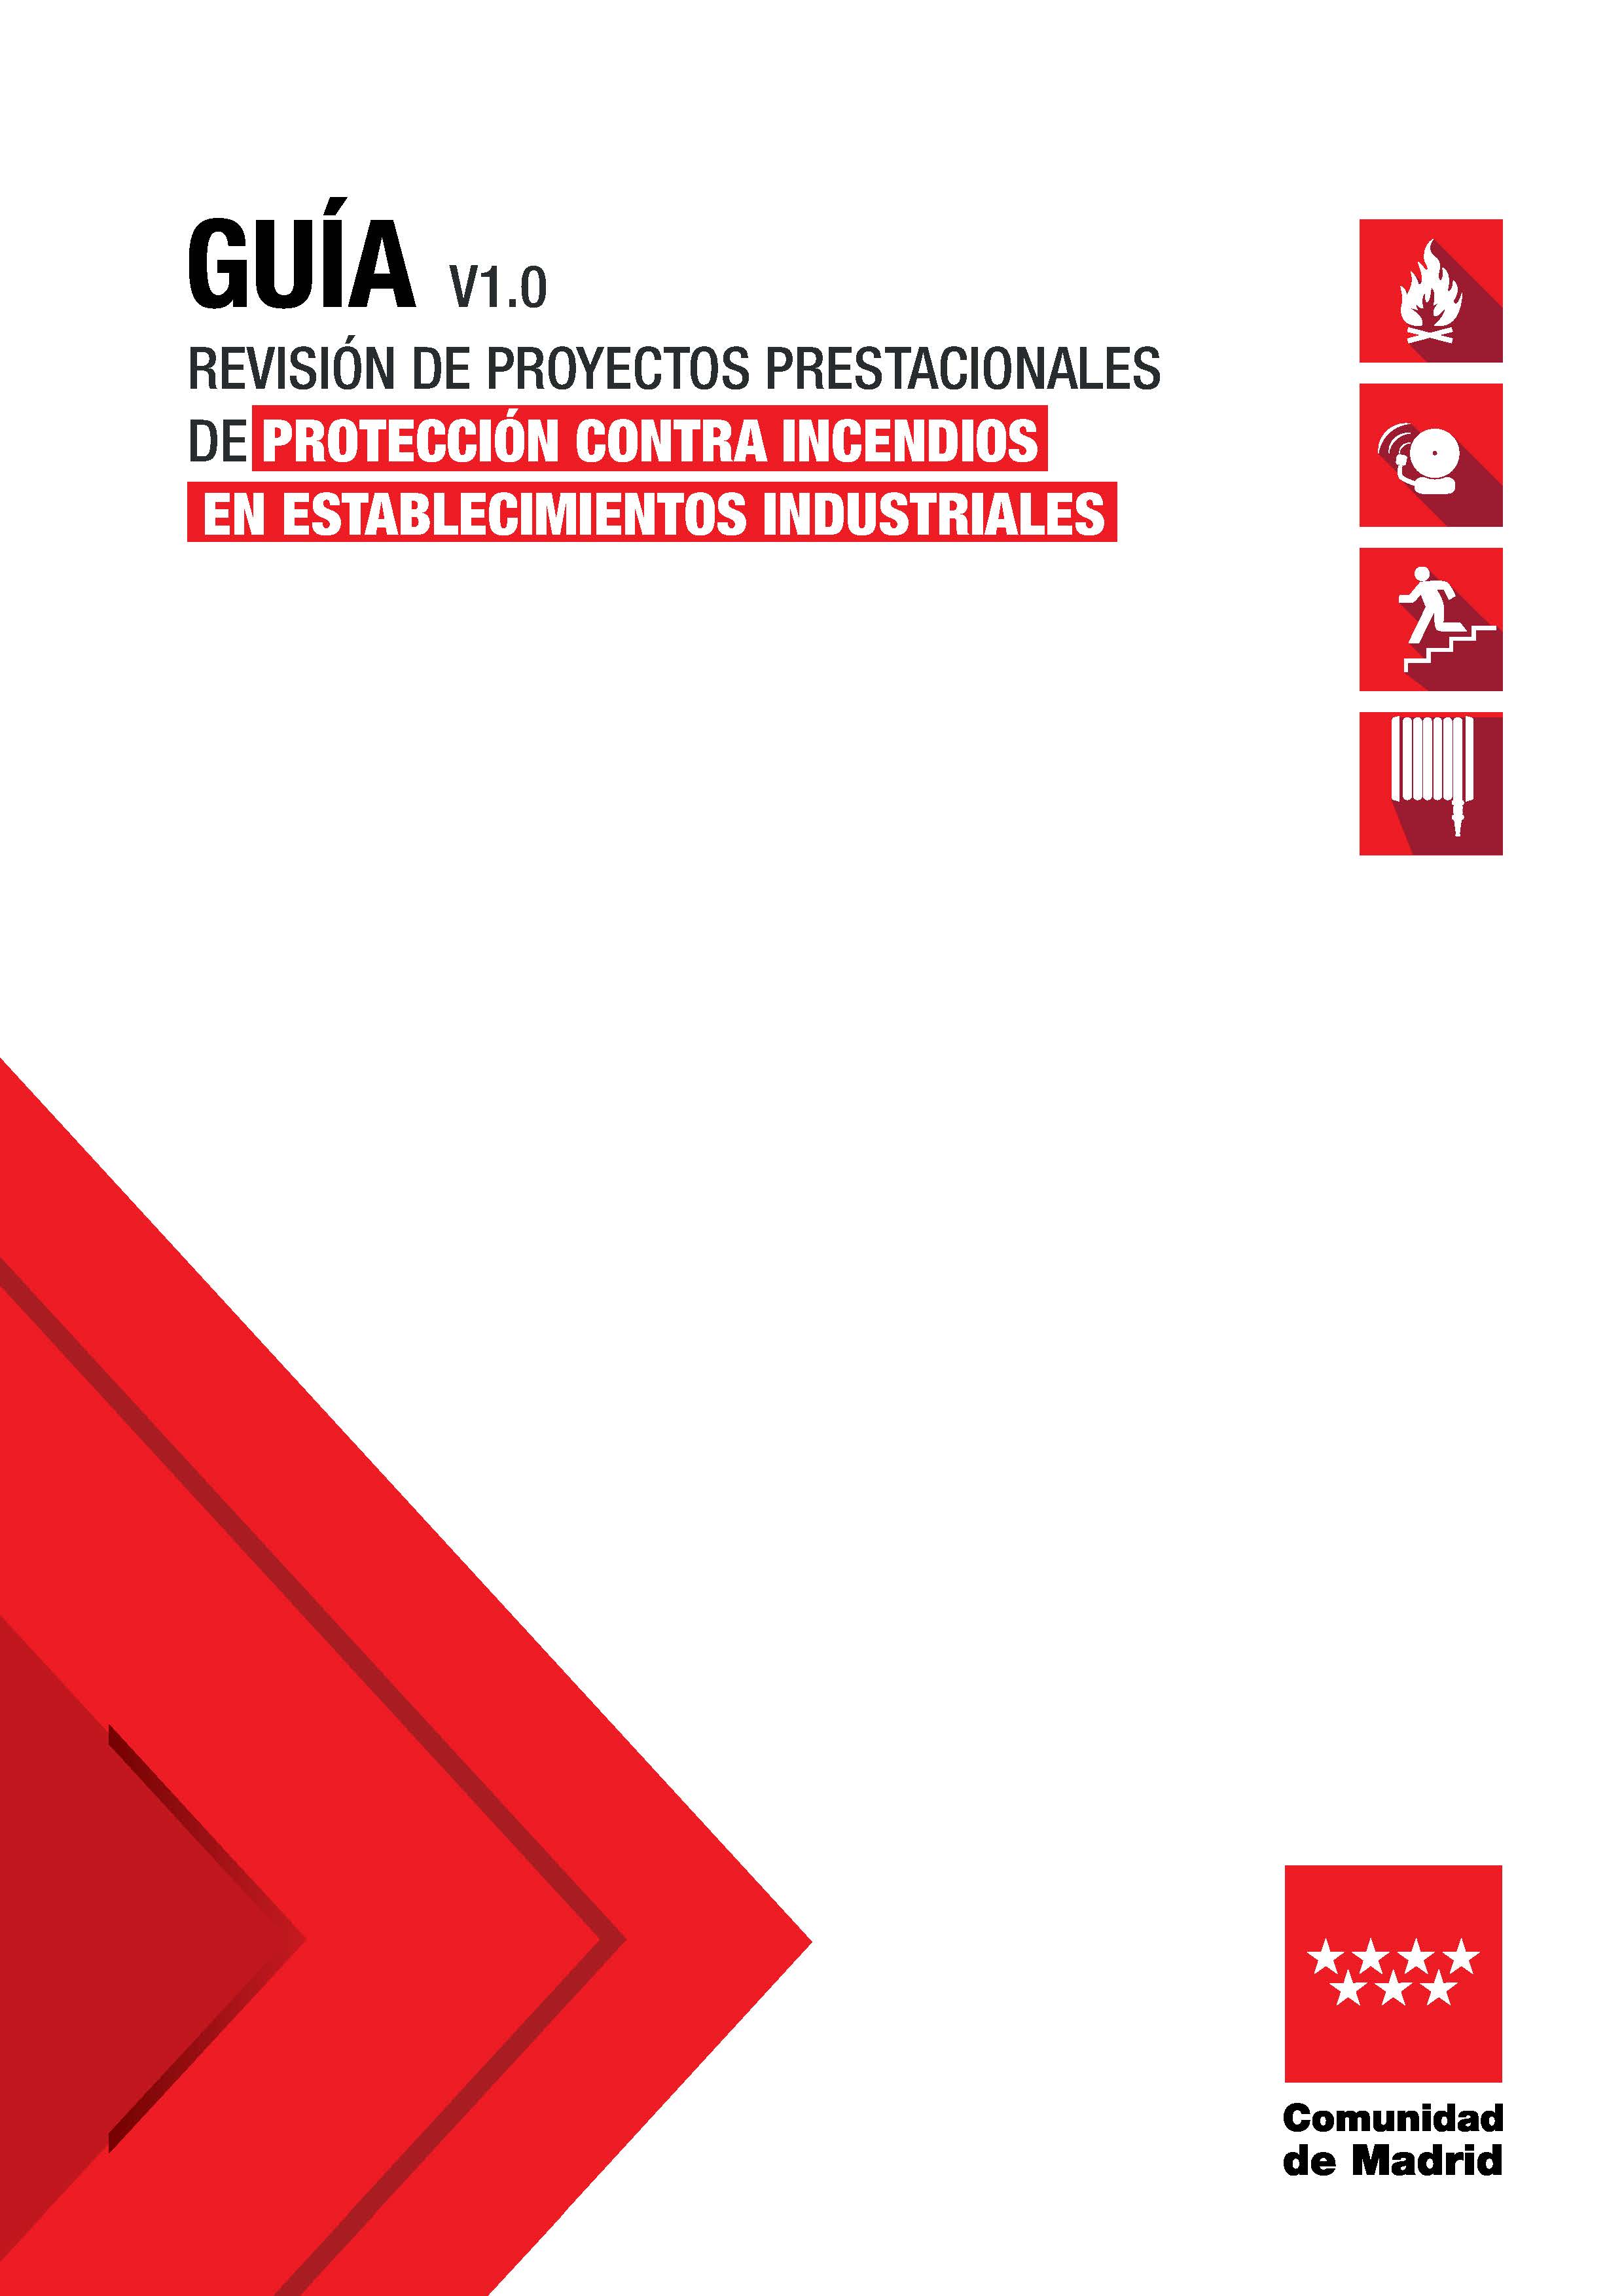 Portada de Guía Revisión de proyectos prestacionales de protección contra incendios en establecimientos industriales V1.0